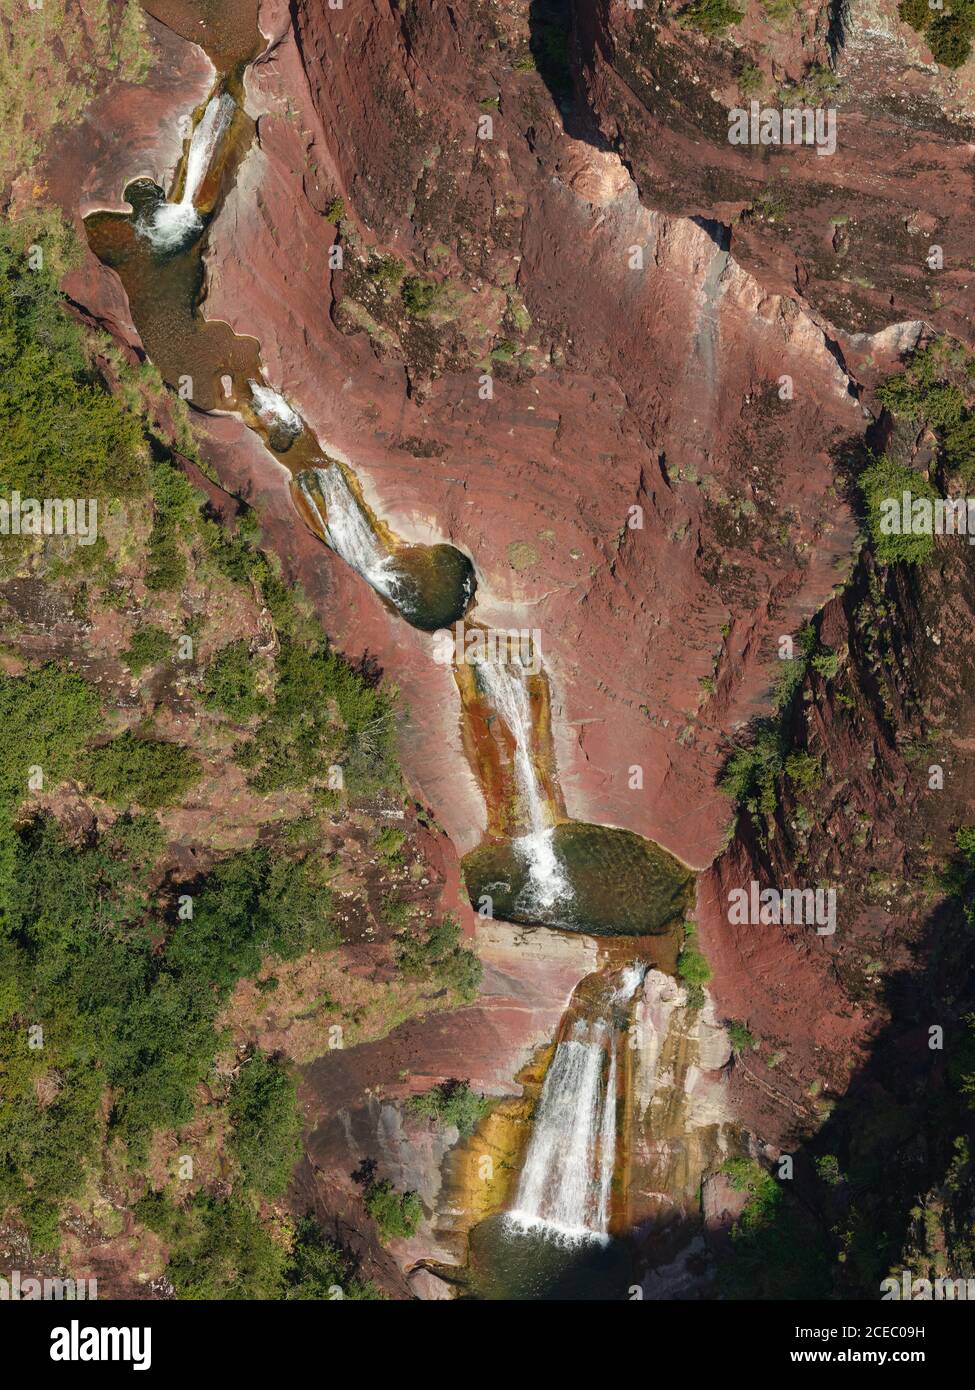 LUFTAUFNAHME. Mehrstufiger Wasserfall mit Tauchbecken in einer Landschaft aus roten Peliten. Vallon de Challandre, Beuil, Alpes-Maritimes, Frankreich. Stockfoto